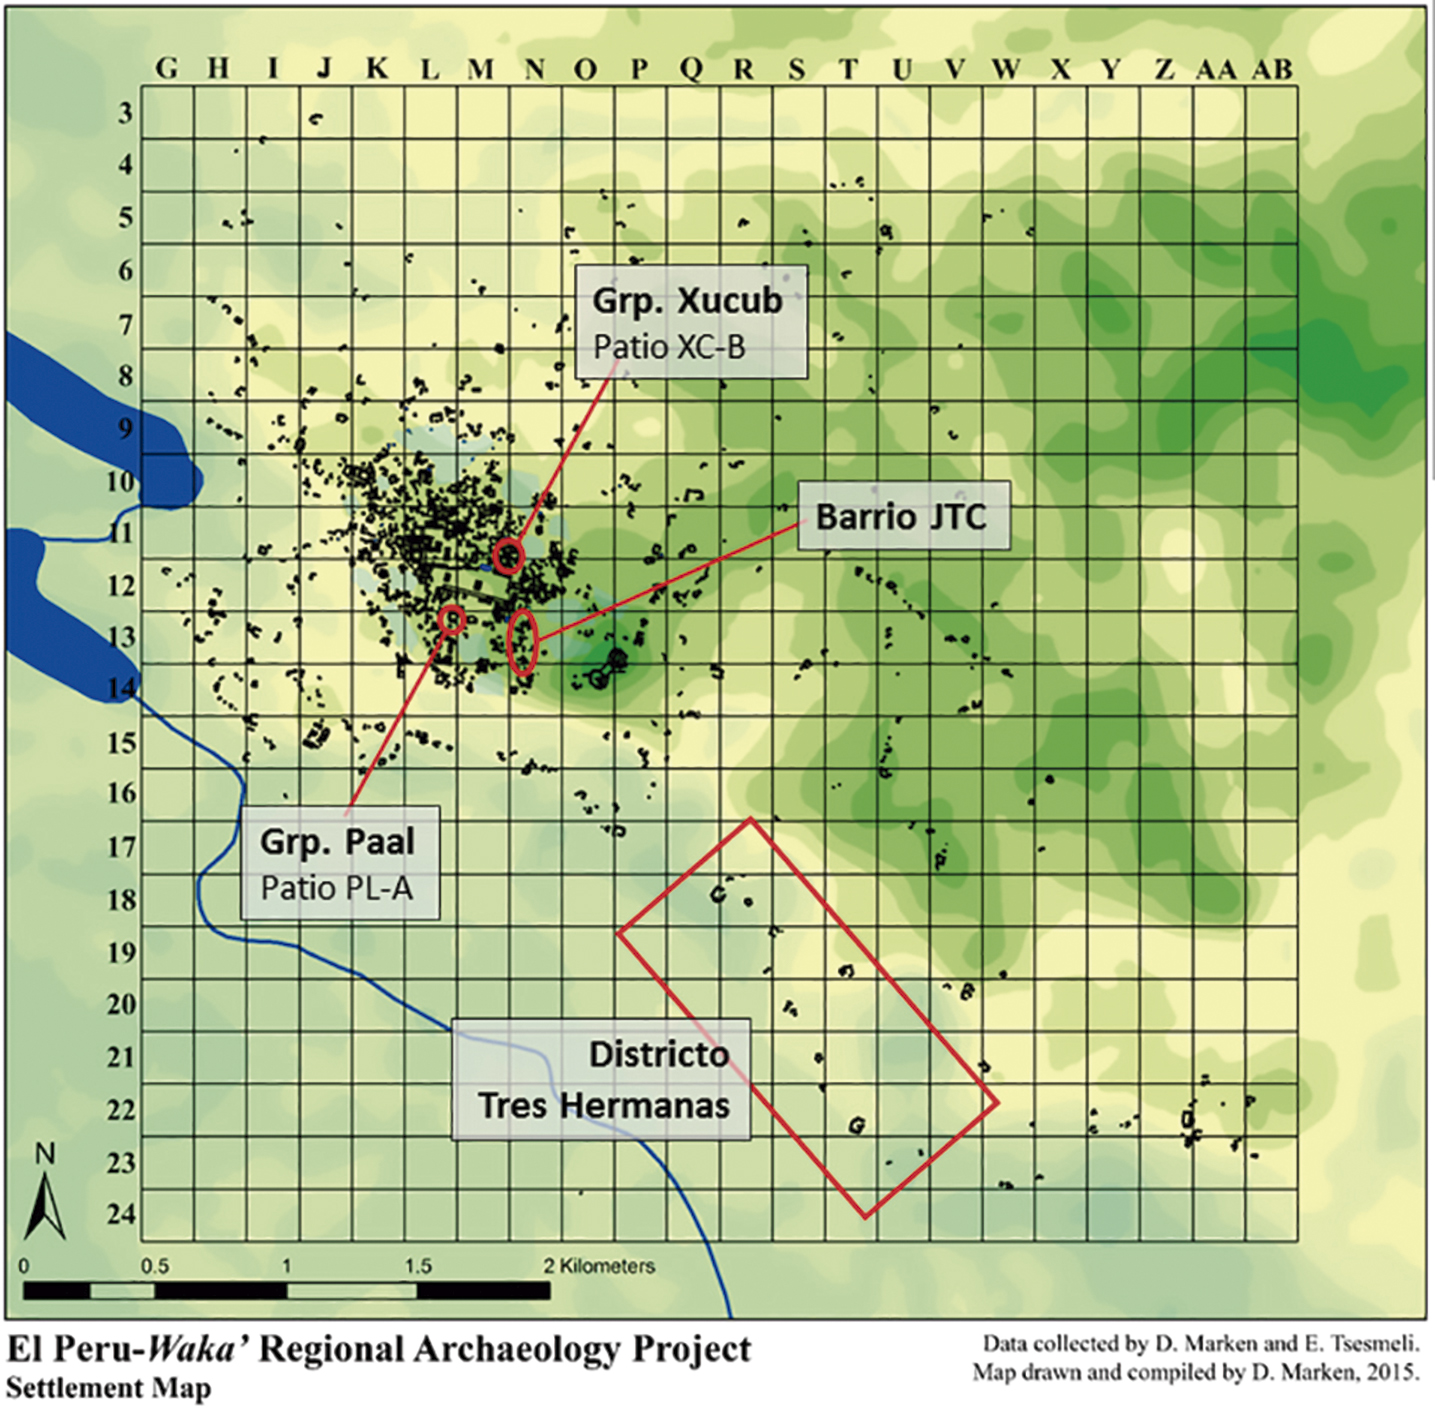 Mapa 8. Los grupos residenciales excavados de El Perú-Waka’ (elaborado por D. Marken).